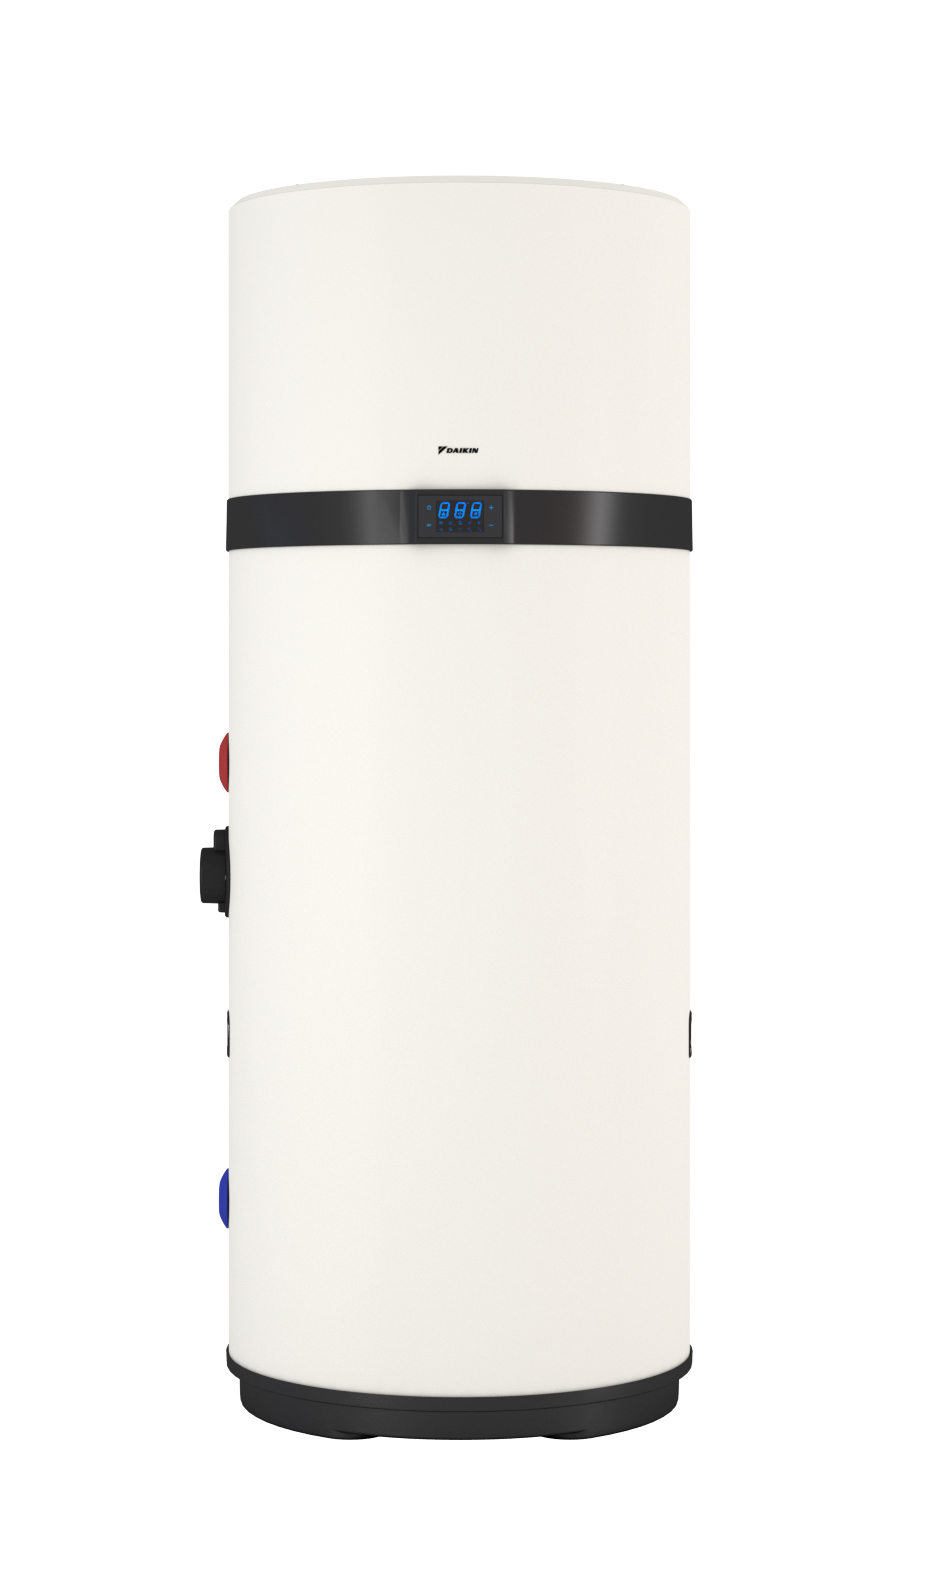 Daikin Altherma M HW 200, Warmwasser-Wärmepumpe mit integriertem 200L Speicher